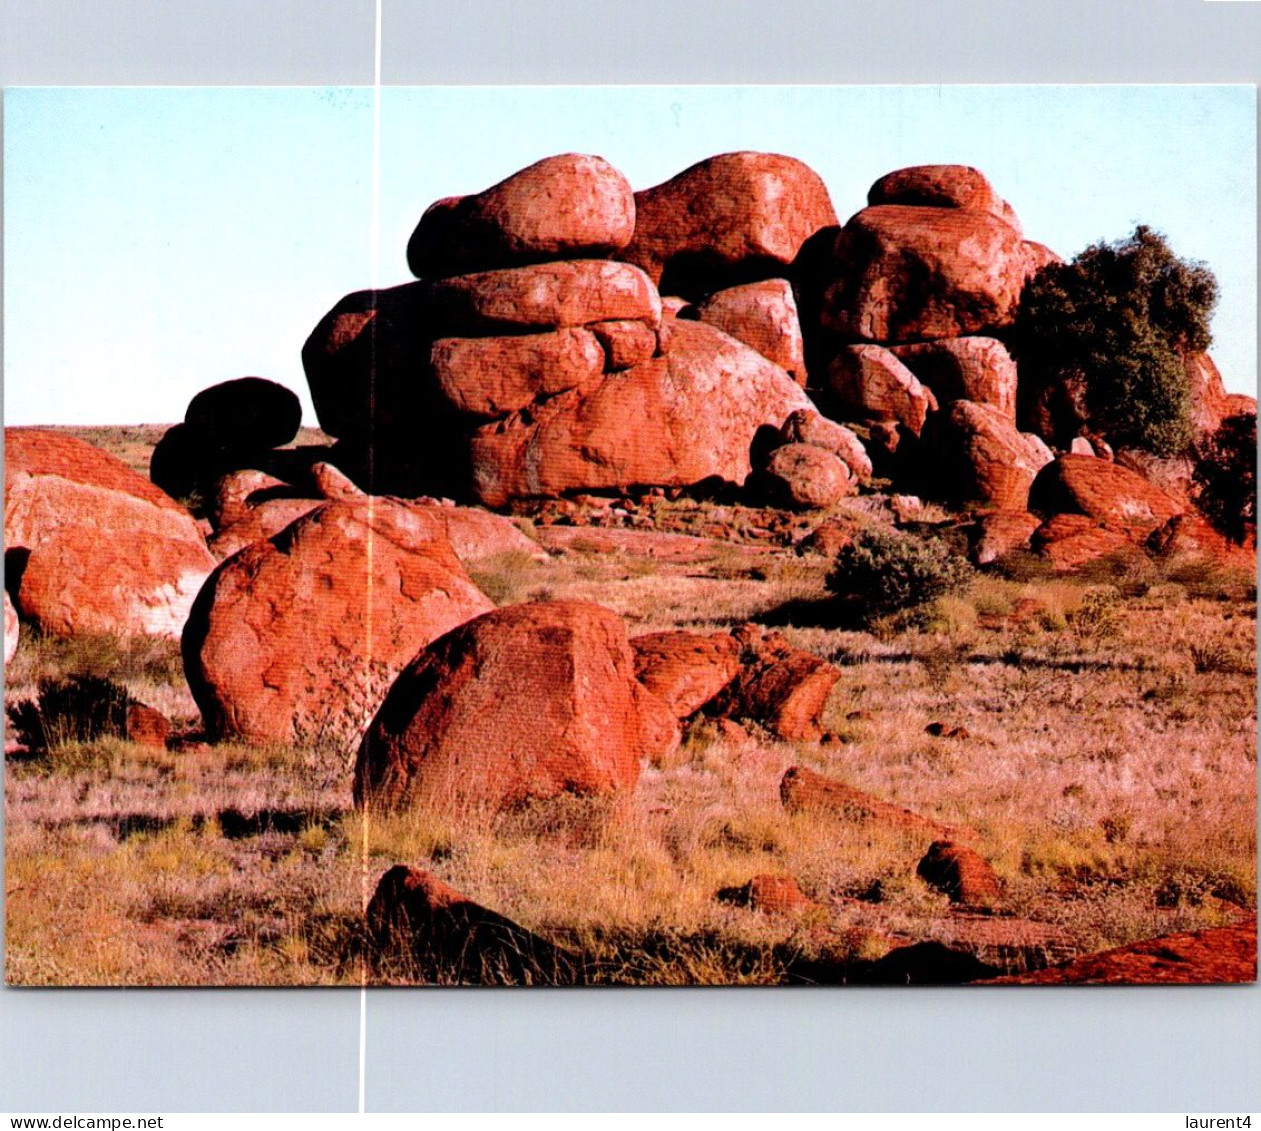 22-5-2024 (5 Z 48) Australia - NT - Devil's Marbles (2 Postcards) - Non Classés